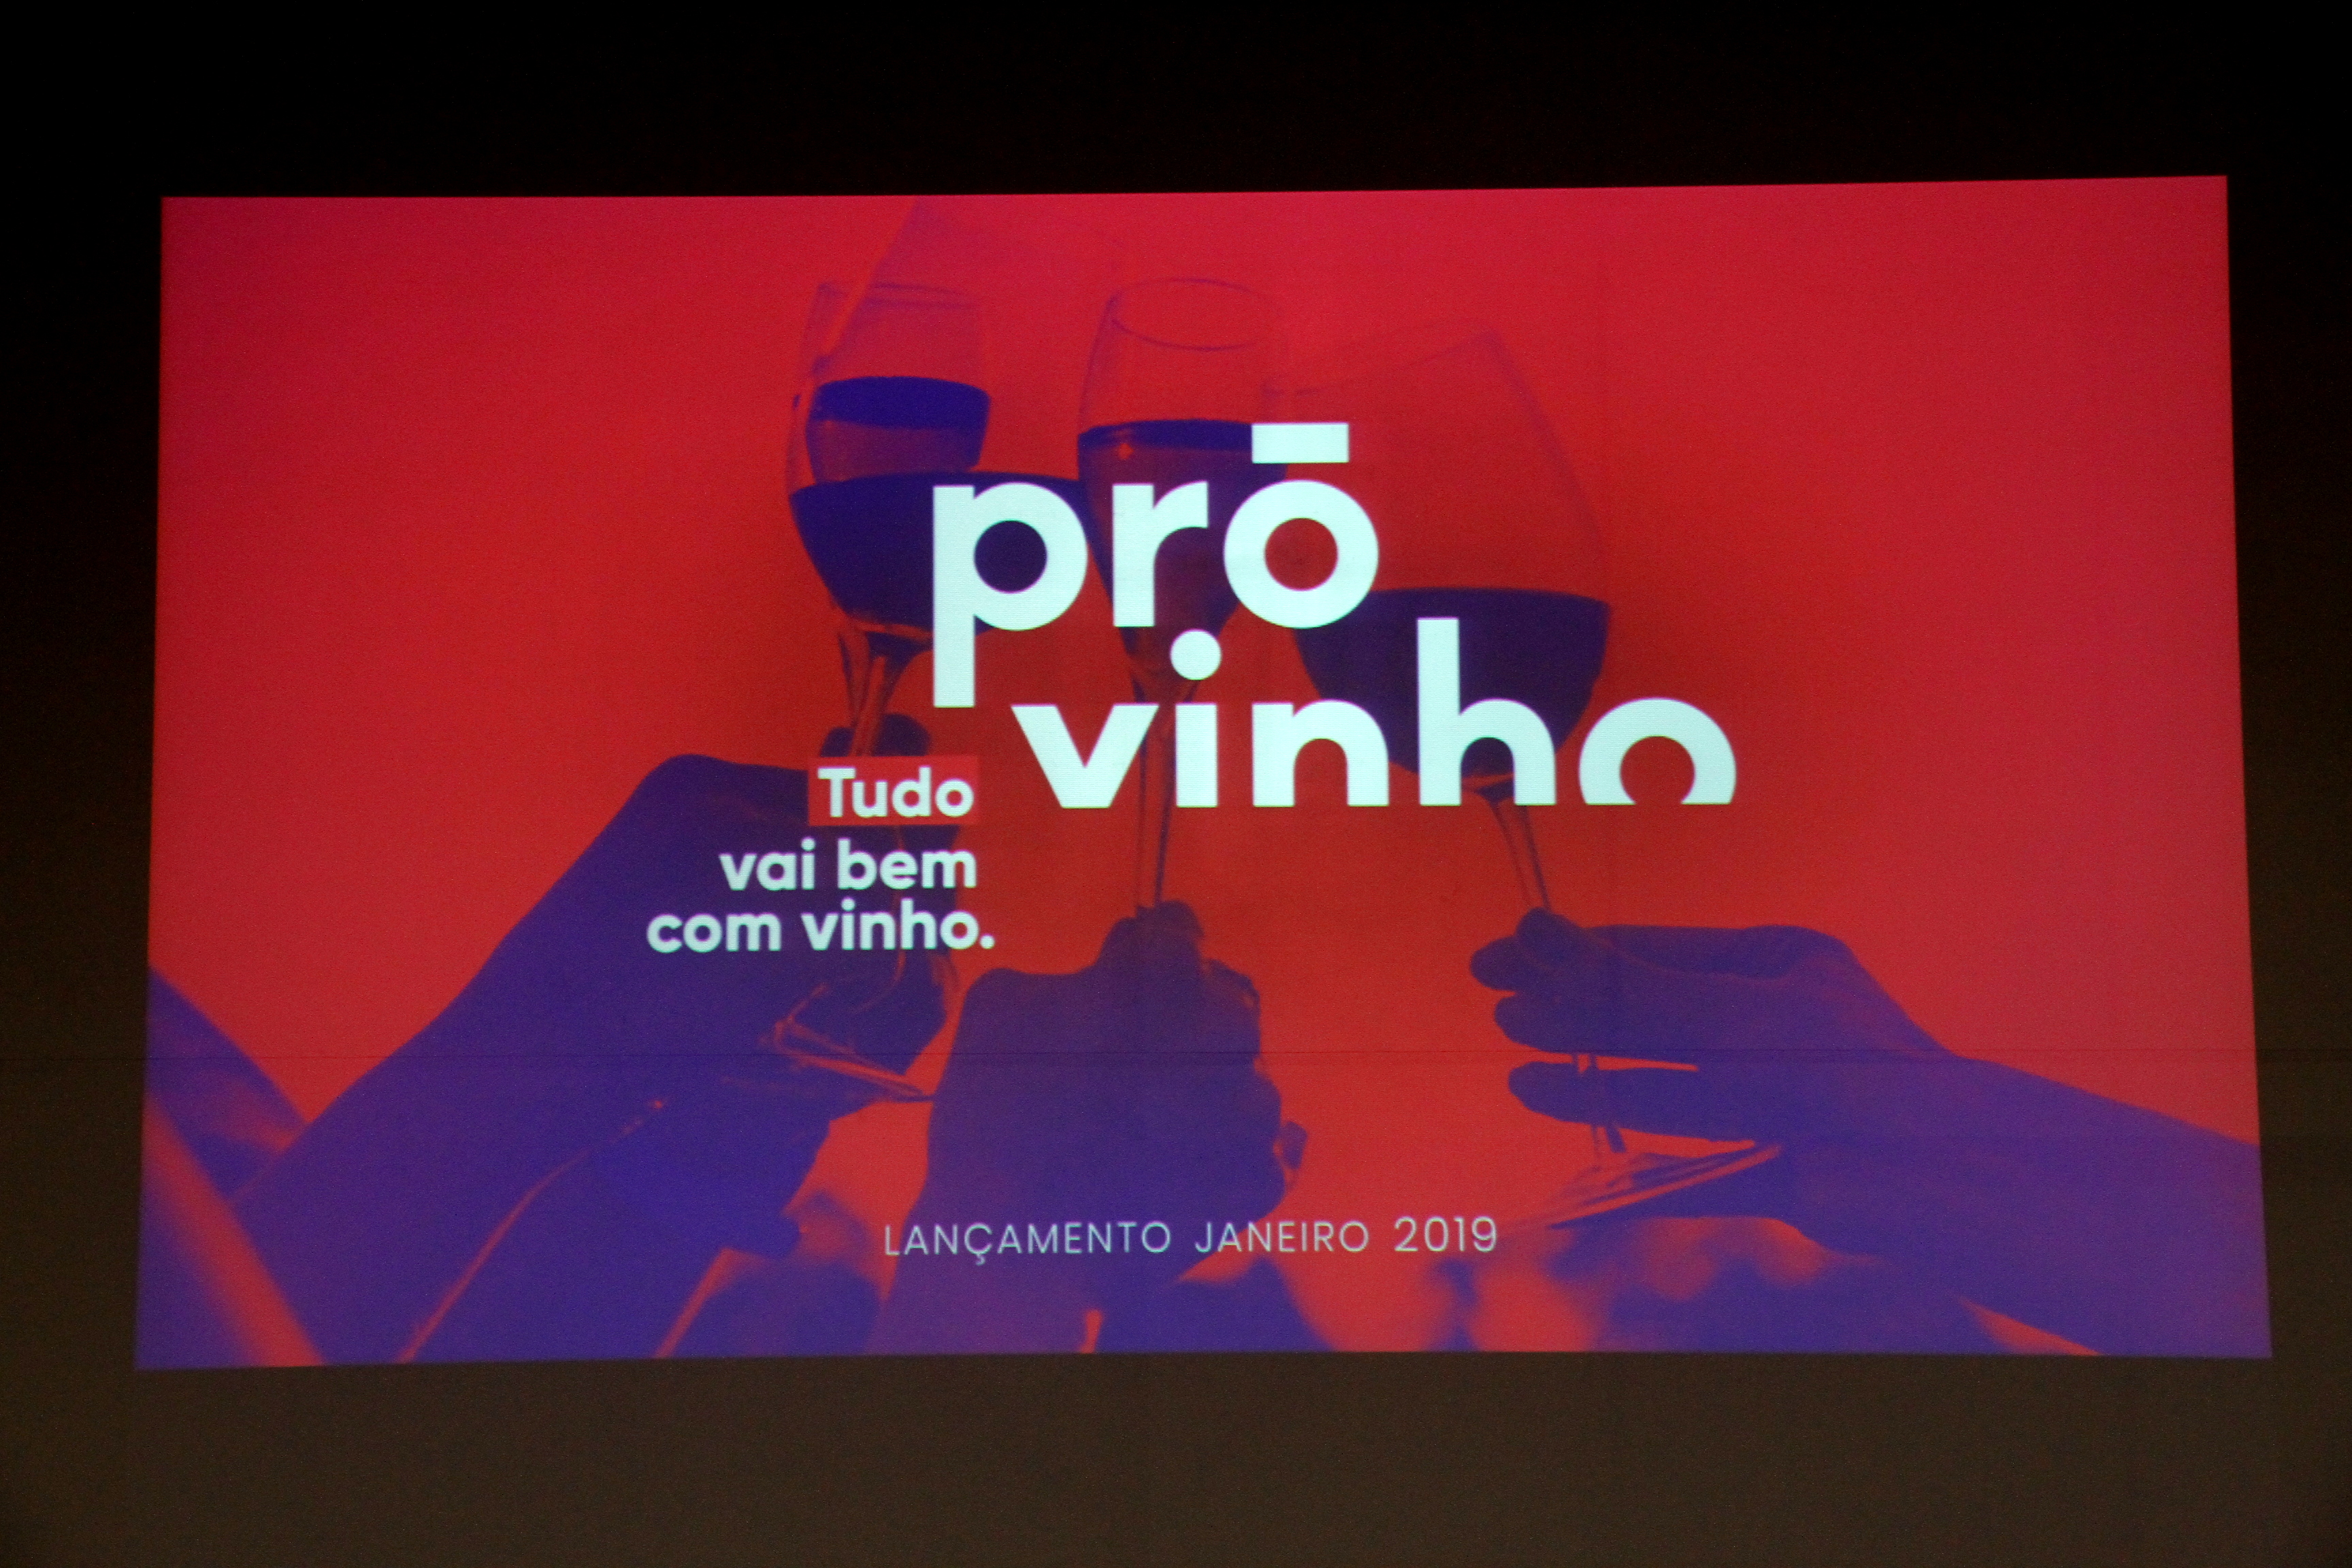 Na tentativa de ajudar a aumentar o consumo de vinho no Brasil, setores importantes do mundo do vinho decidiram se unir e lançar a Pró-Vinho